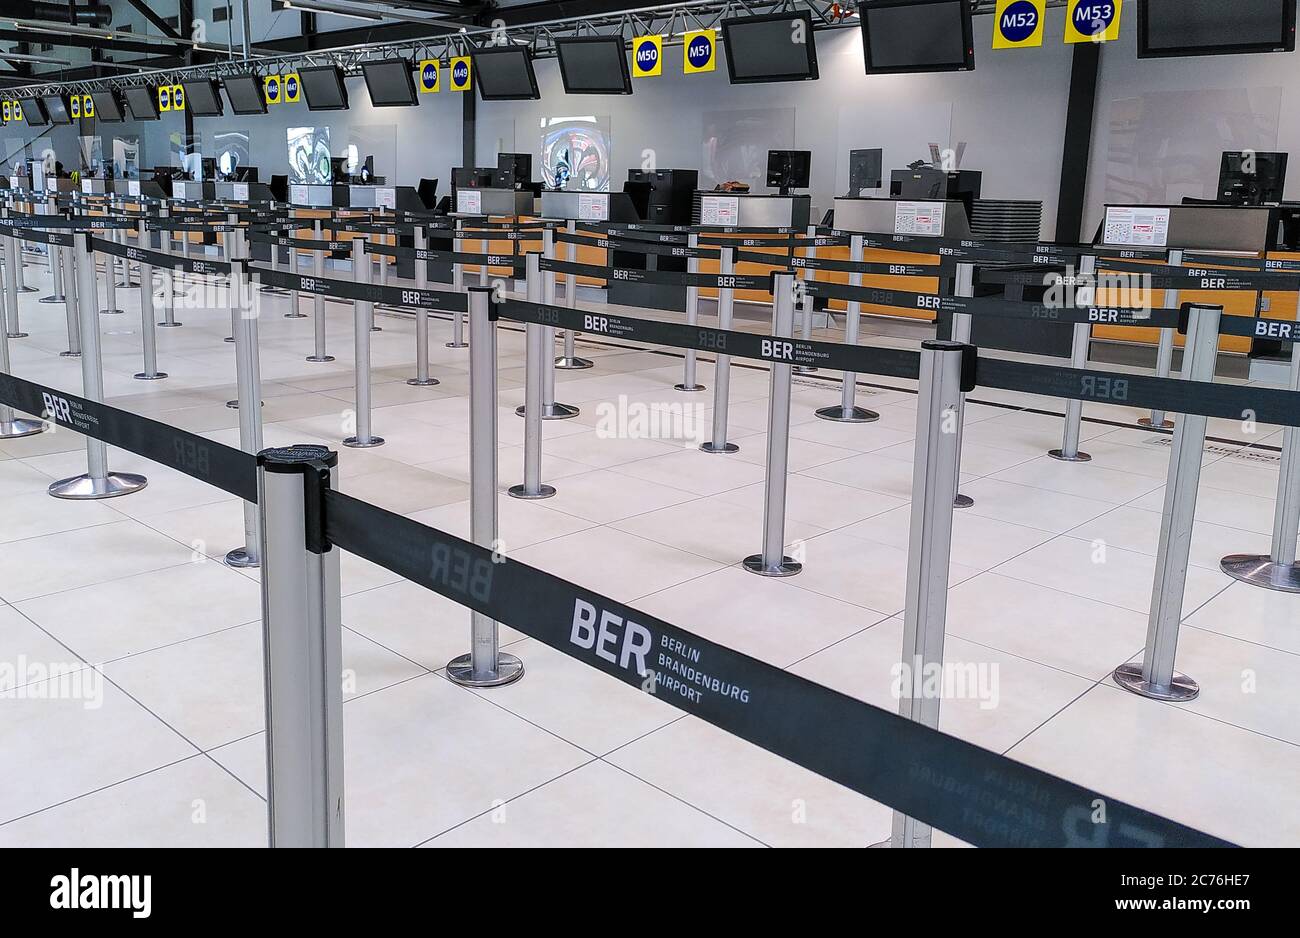 Banchi di check-in abbandonati all'aeroporto di Schönefeld (con nastro di barriera per l'aeroporto BER) a causa del basso volume di passeggeri durante la crisi del coronavirus in Germania. Foto Stock